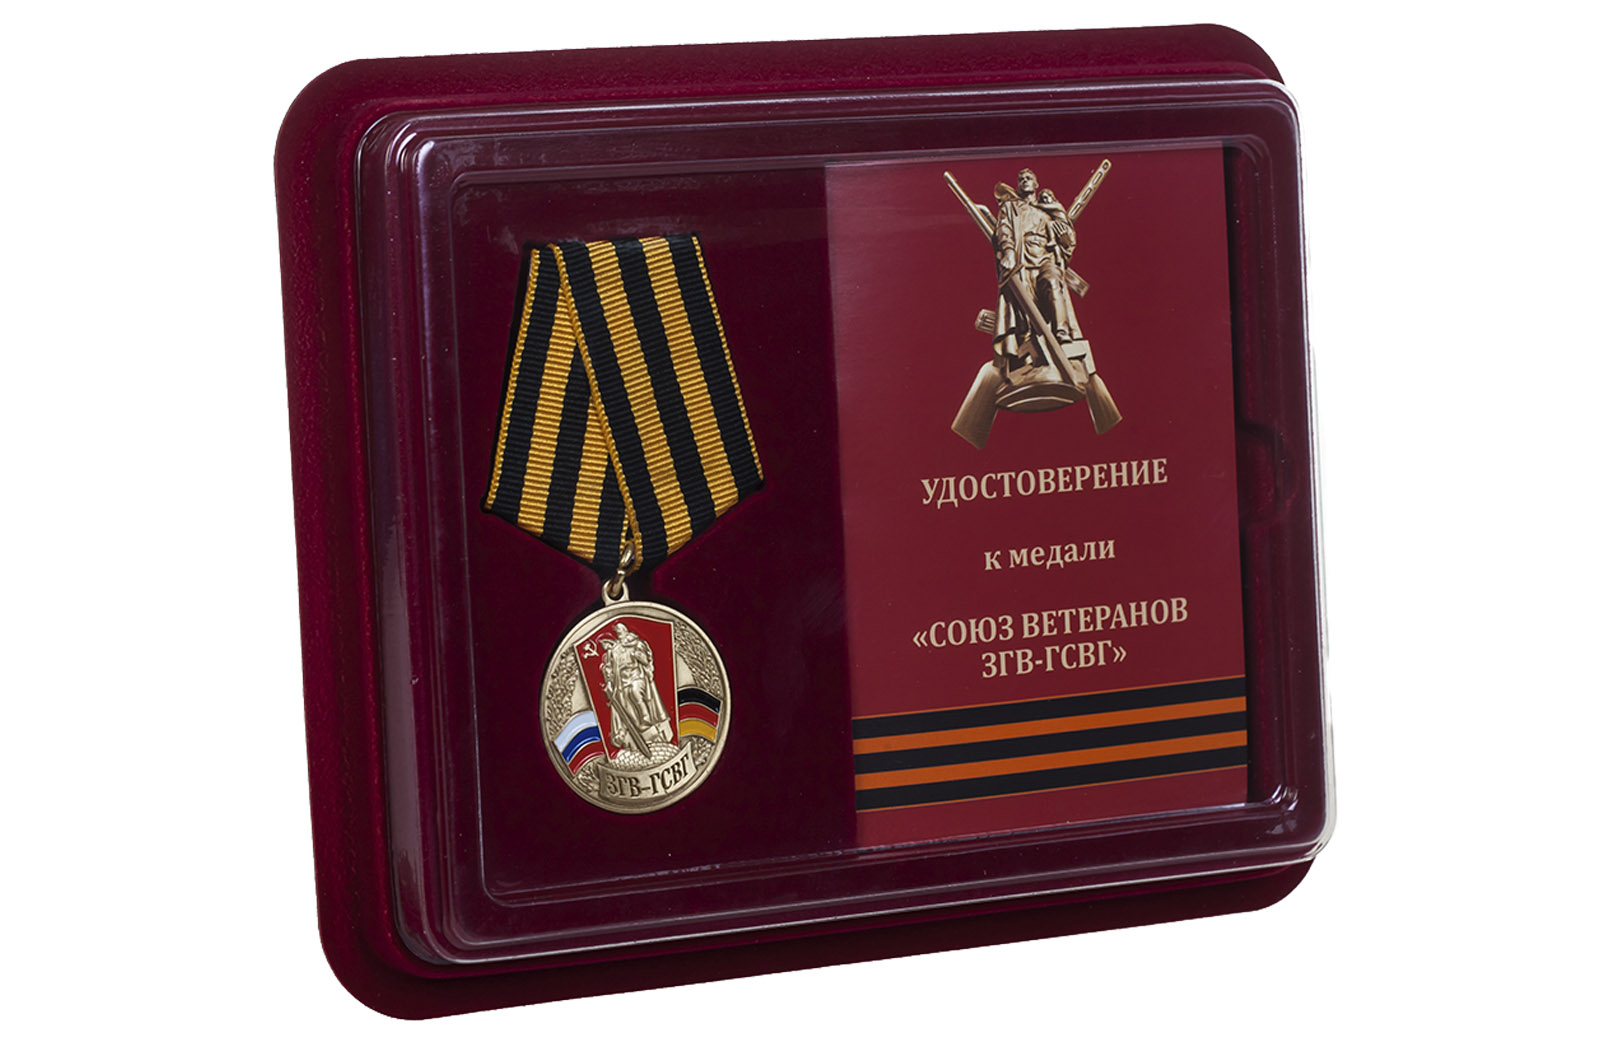 Купить медаль Союз ветеранов ЗГВ-ГСВГ в футляре с удостоверением онлайн с доставкой